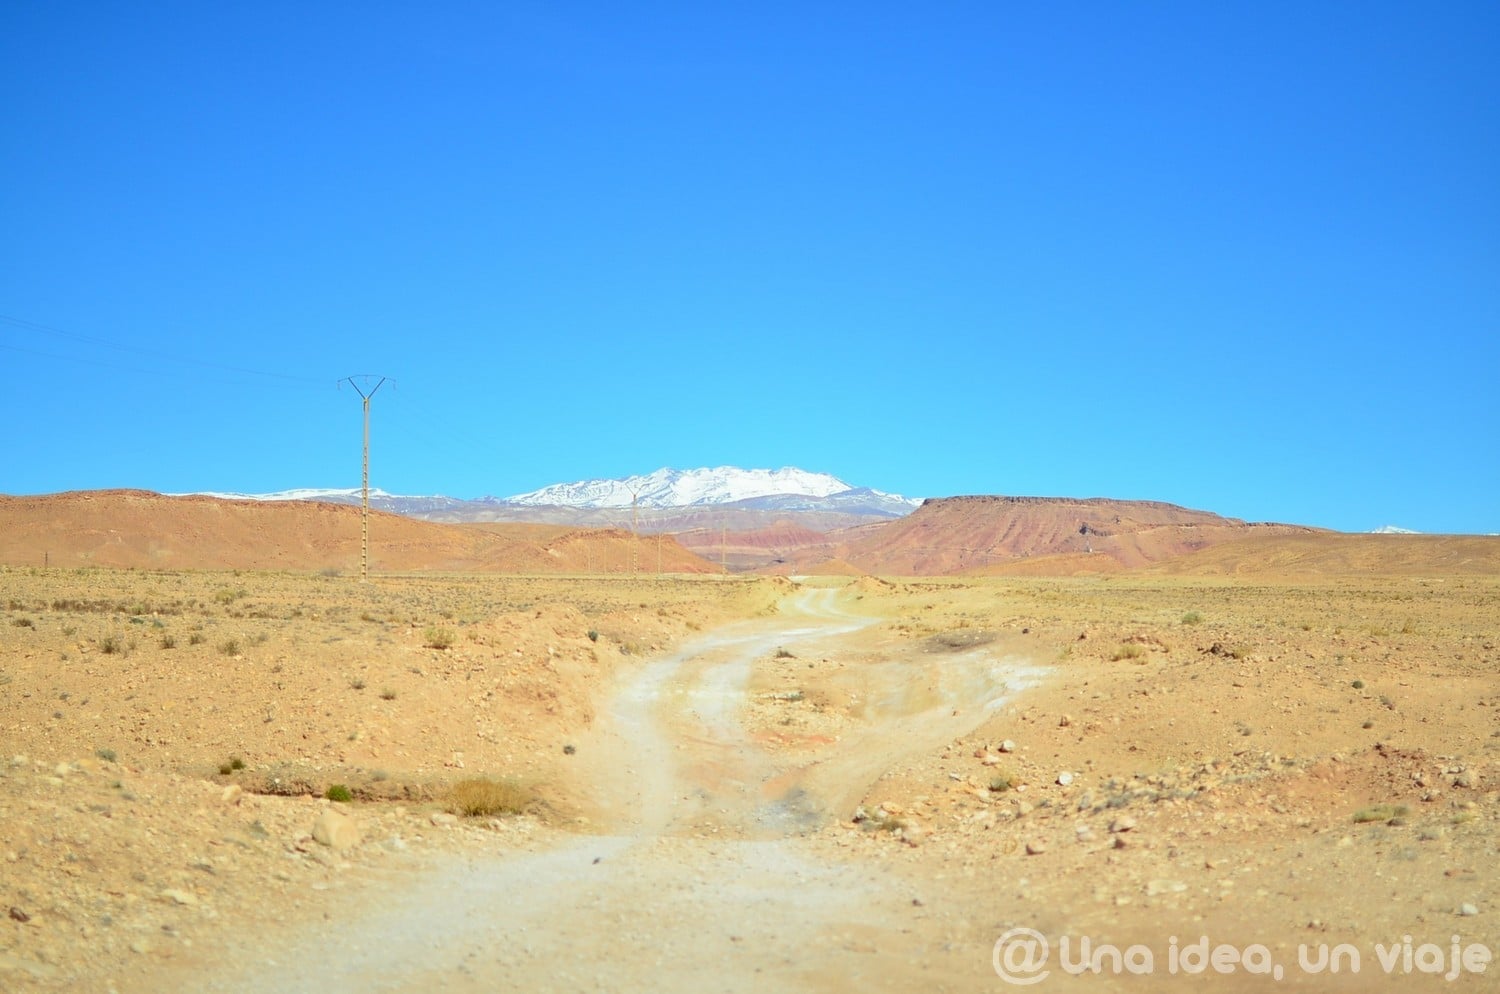 marrakech-marruecos-excursion-ruta-desierto-sahara-unaideaunviaje-06